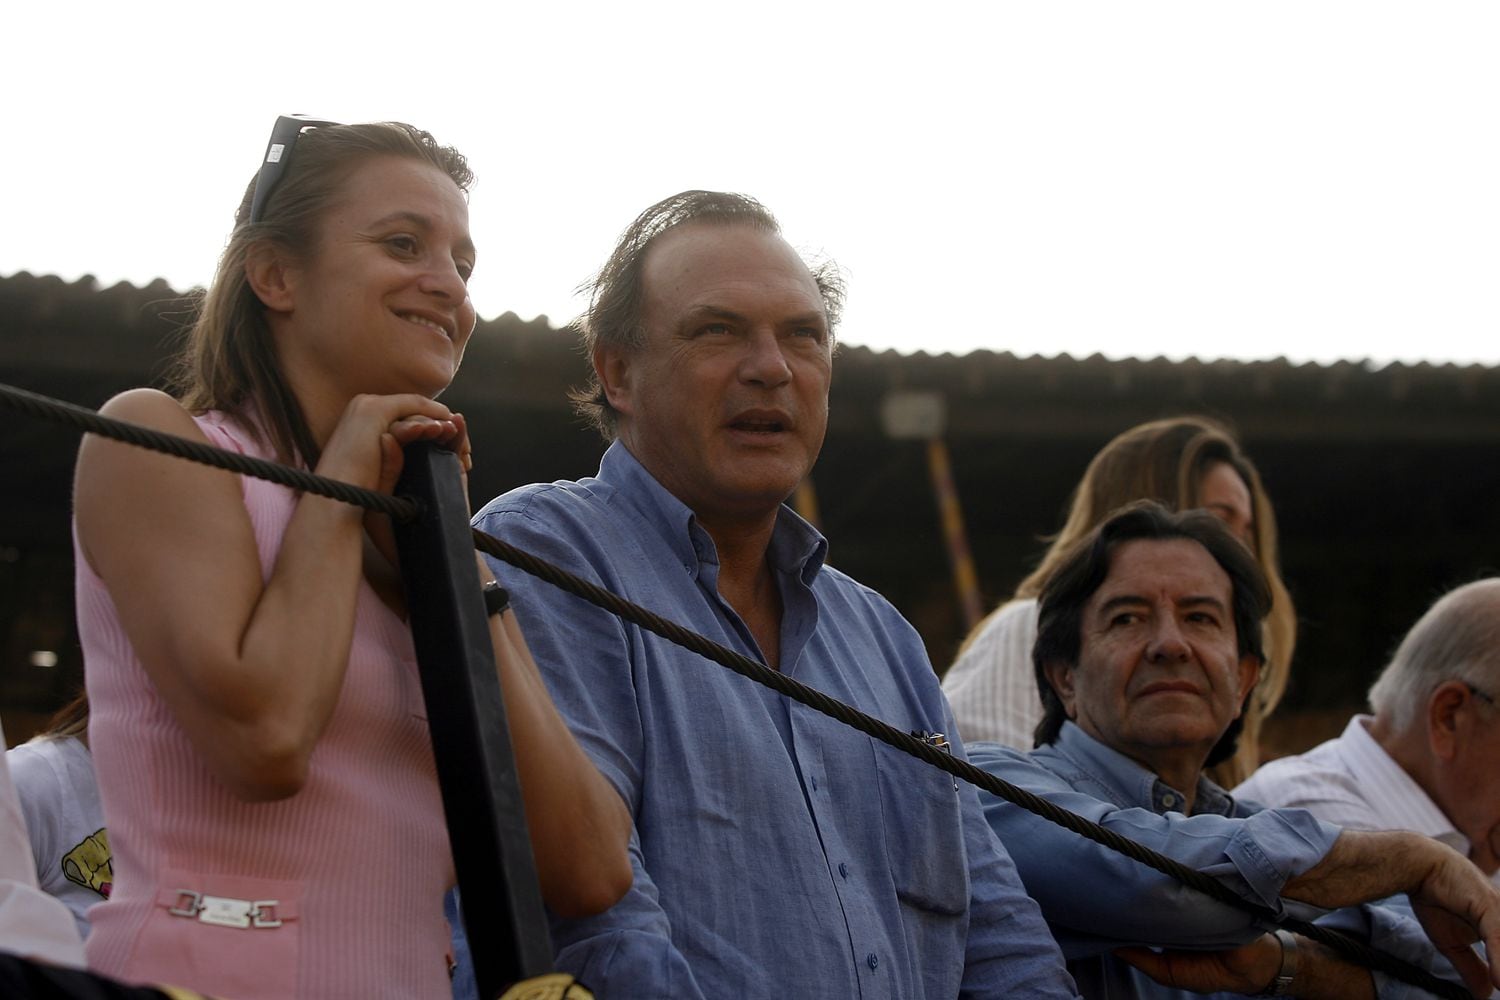 Pedro Piqueras y Esther Barriga en una corrida de toros en Brihuega, Guadalajara, en 2008.